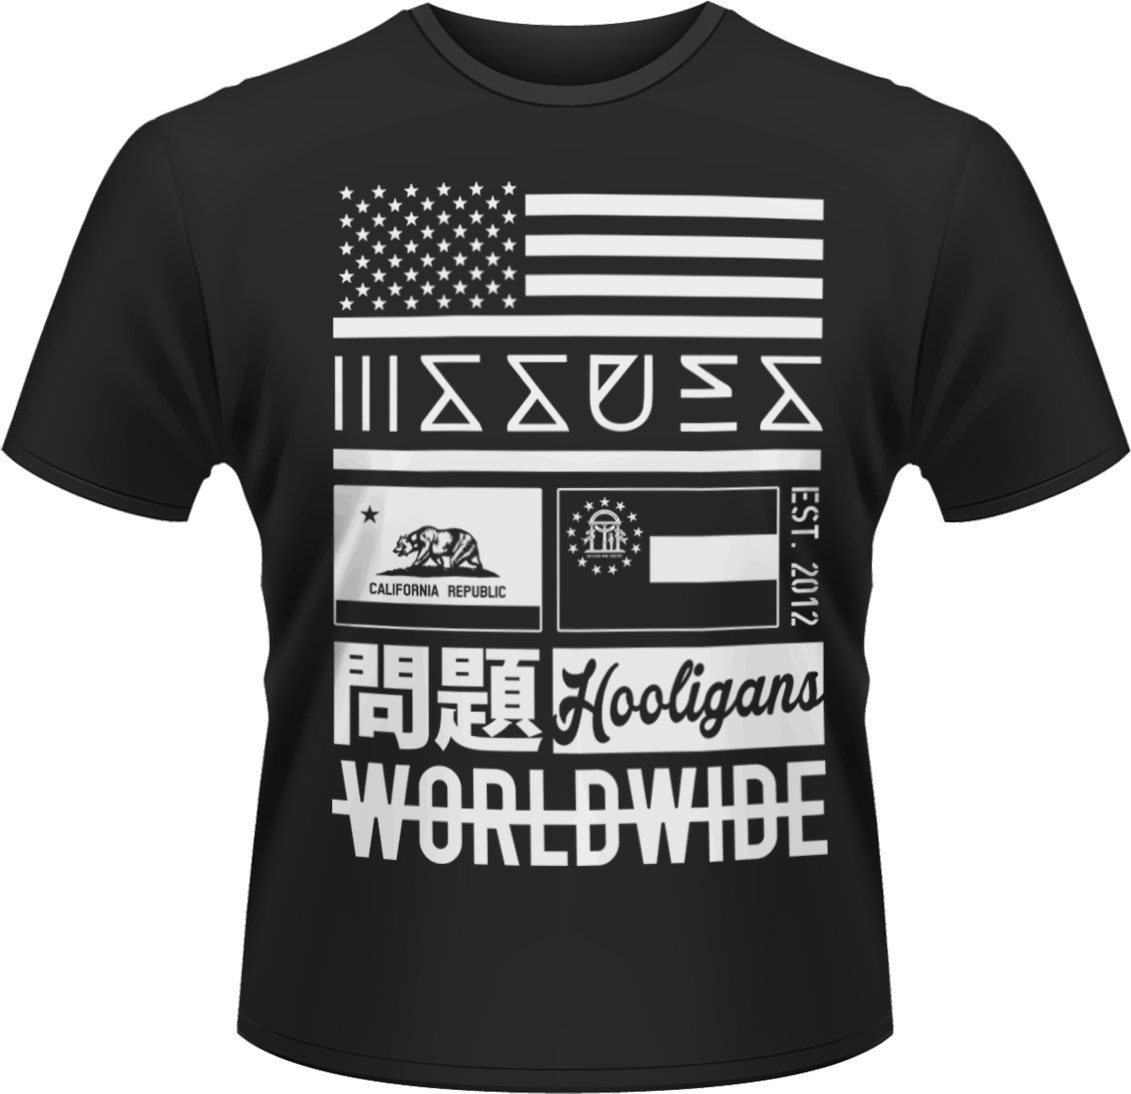 T-shirt Issues T-shirt Worldwide Homme Noir M